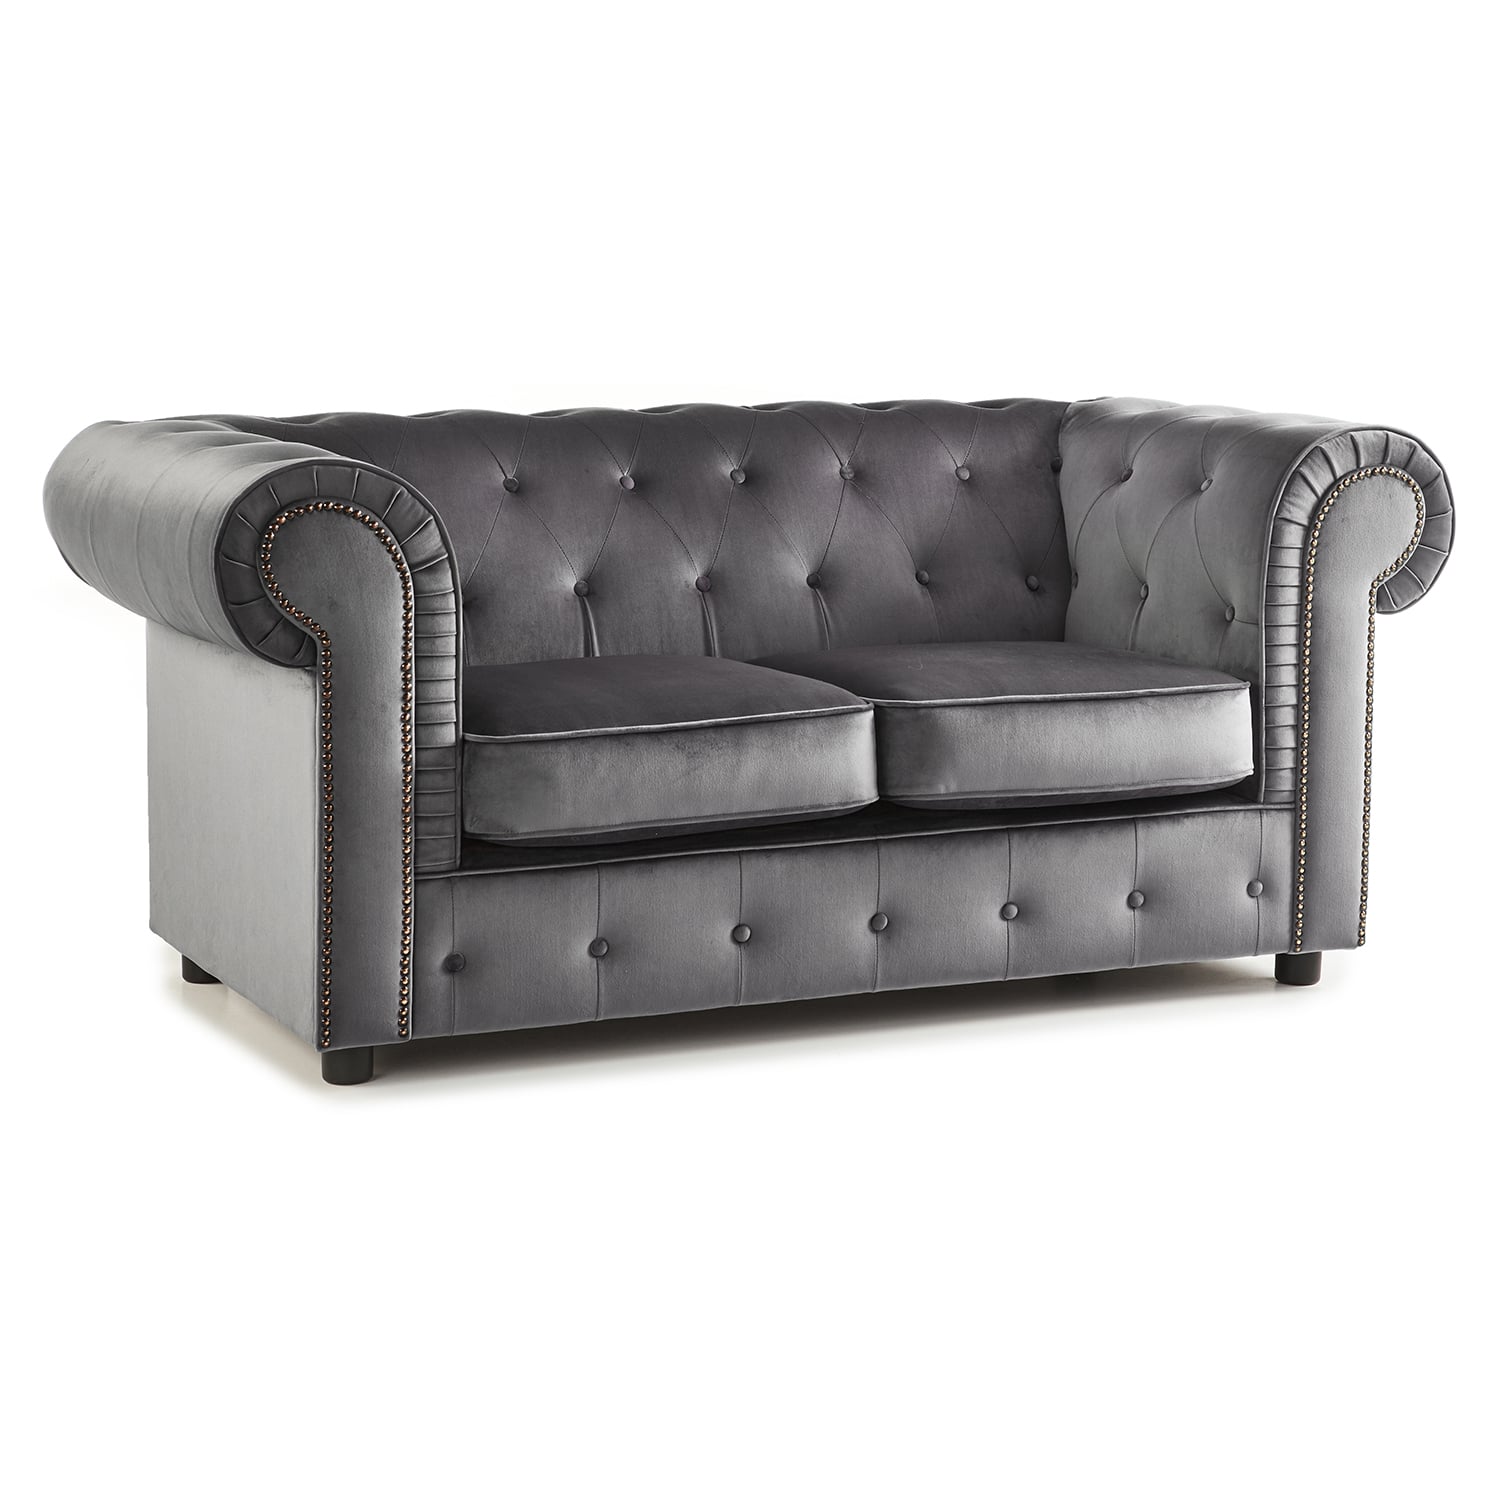 The Ashcroft Soft Velvet Chesterfield 2 Seater Sofa - Grey